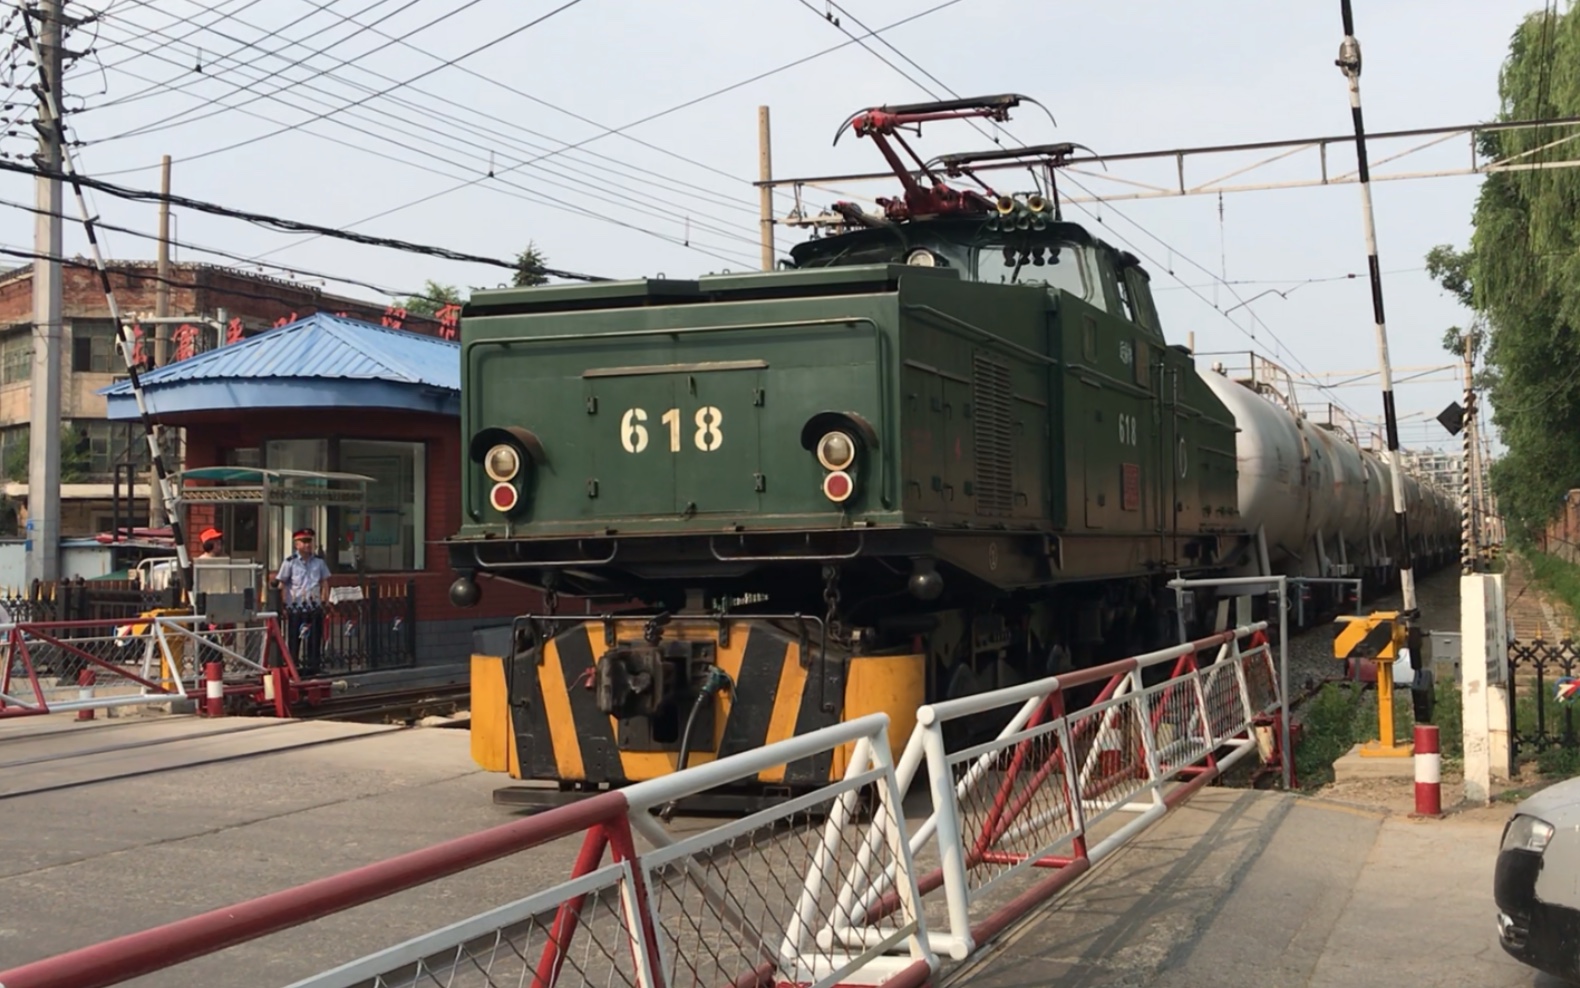 抚顺电铁配属抚矿运输部的韶峰zg1001500型618号电力机车牵引油龙列车